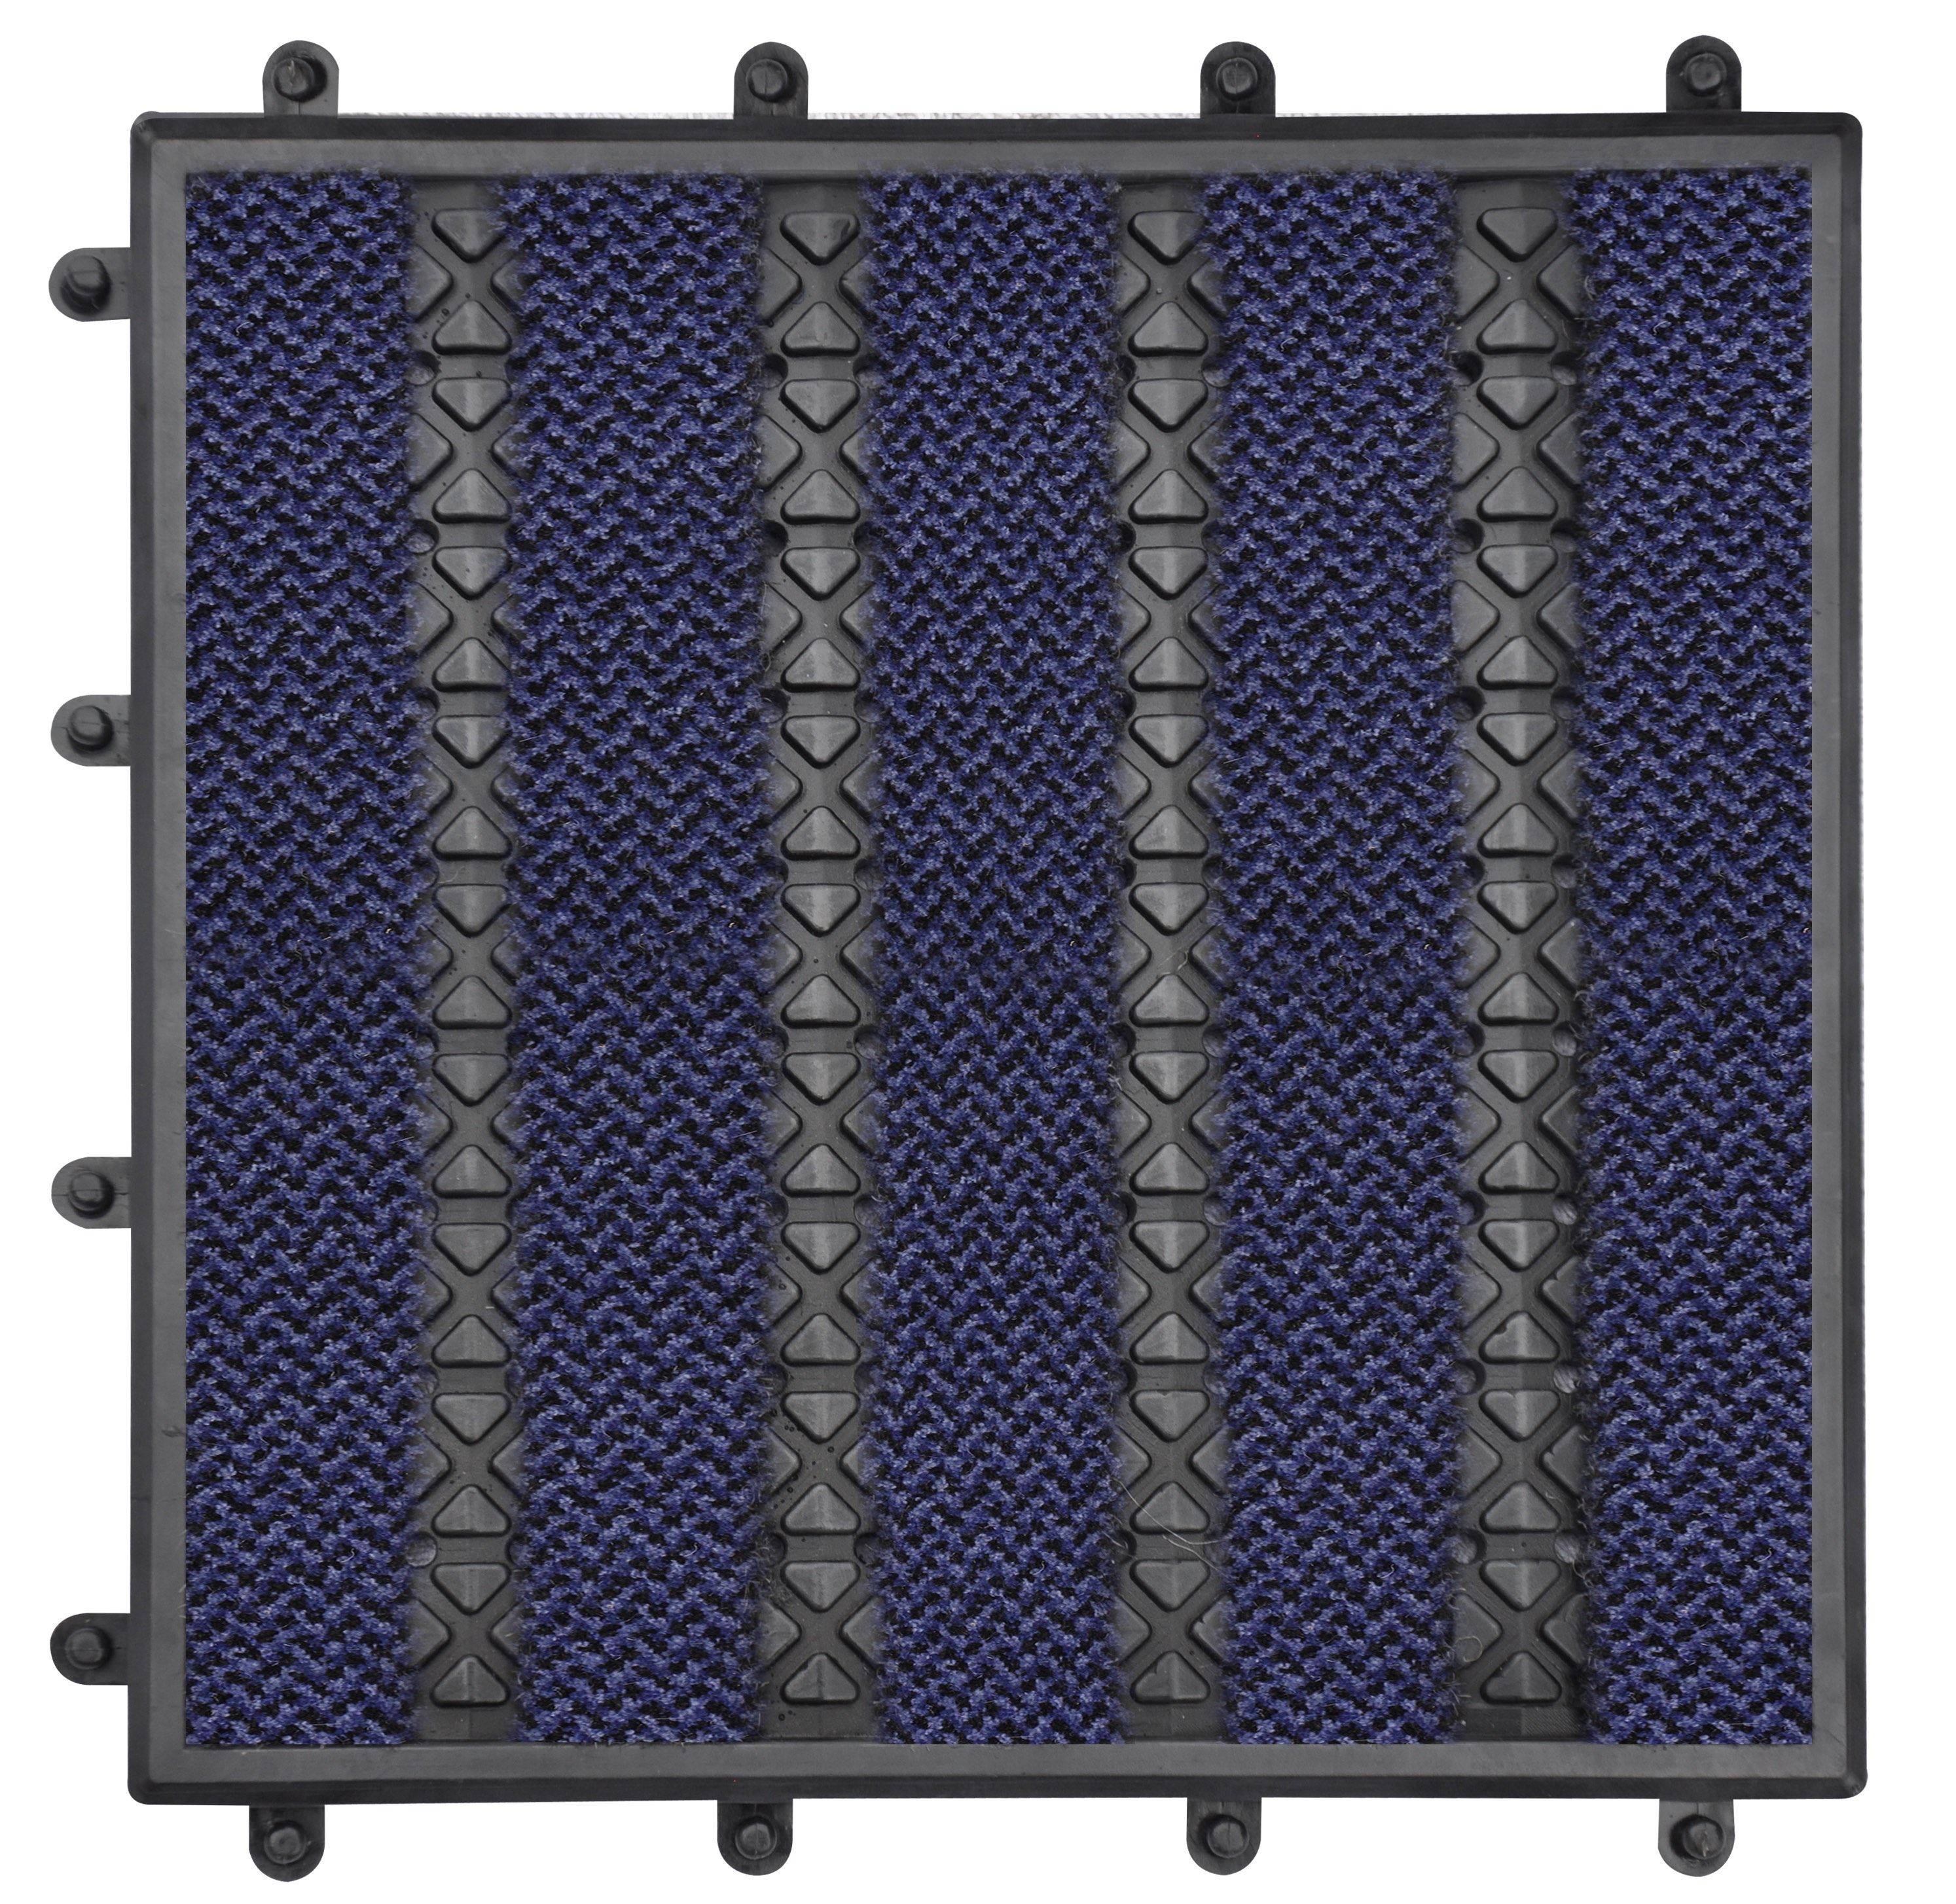 Paragon Treadloc 25 Carpet Tile Premier Dark Blue